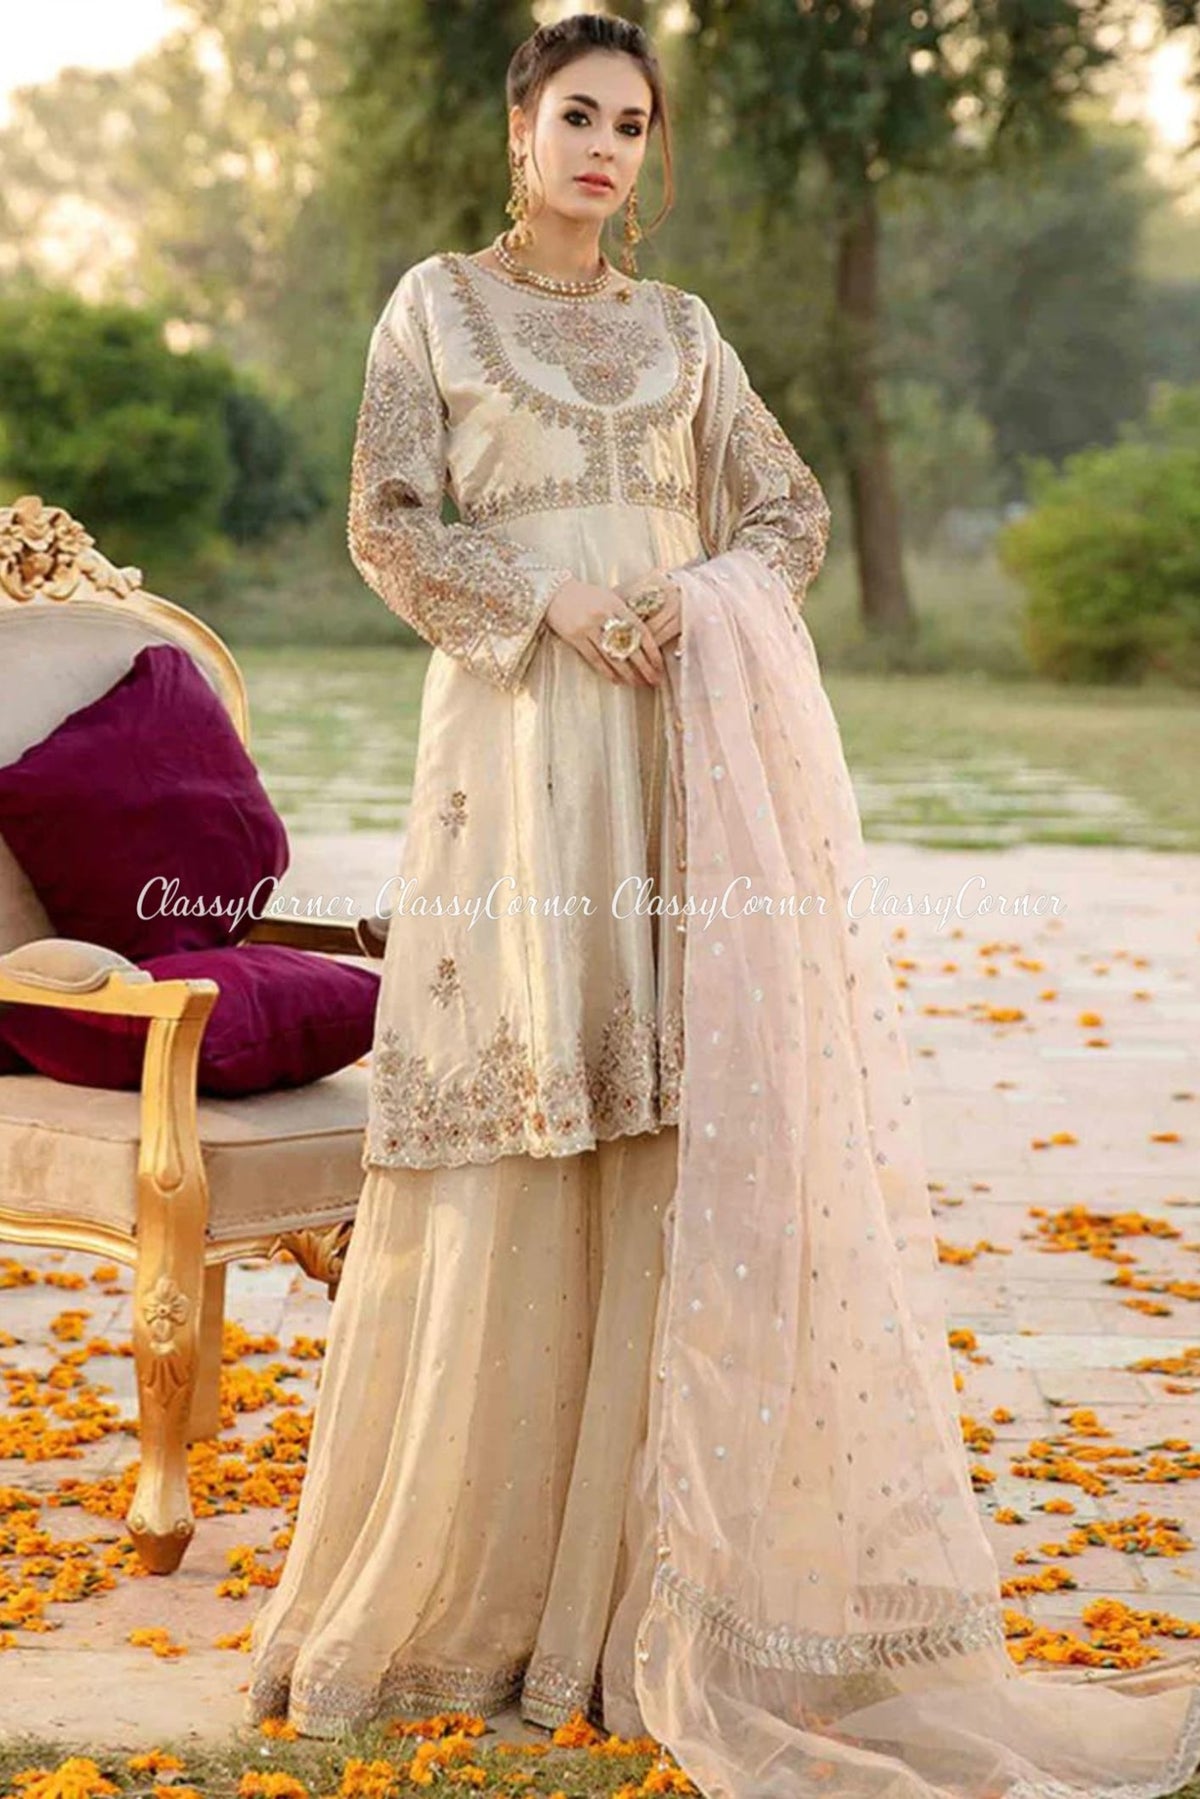 Beige Golden Embellished Formal Sharara Outfit